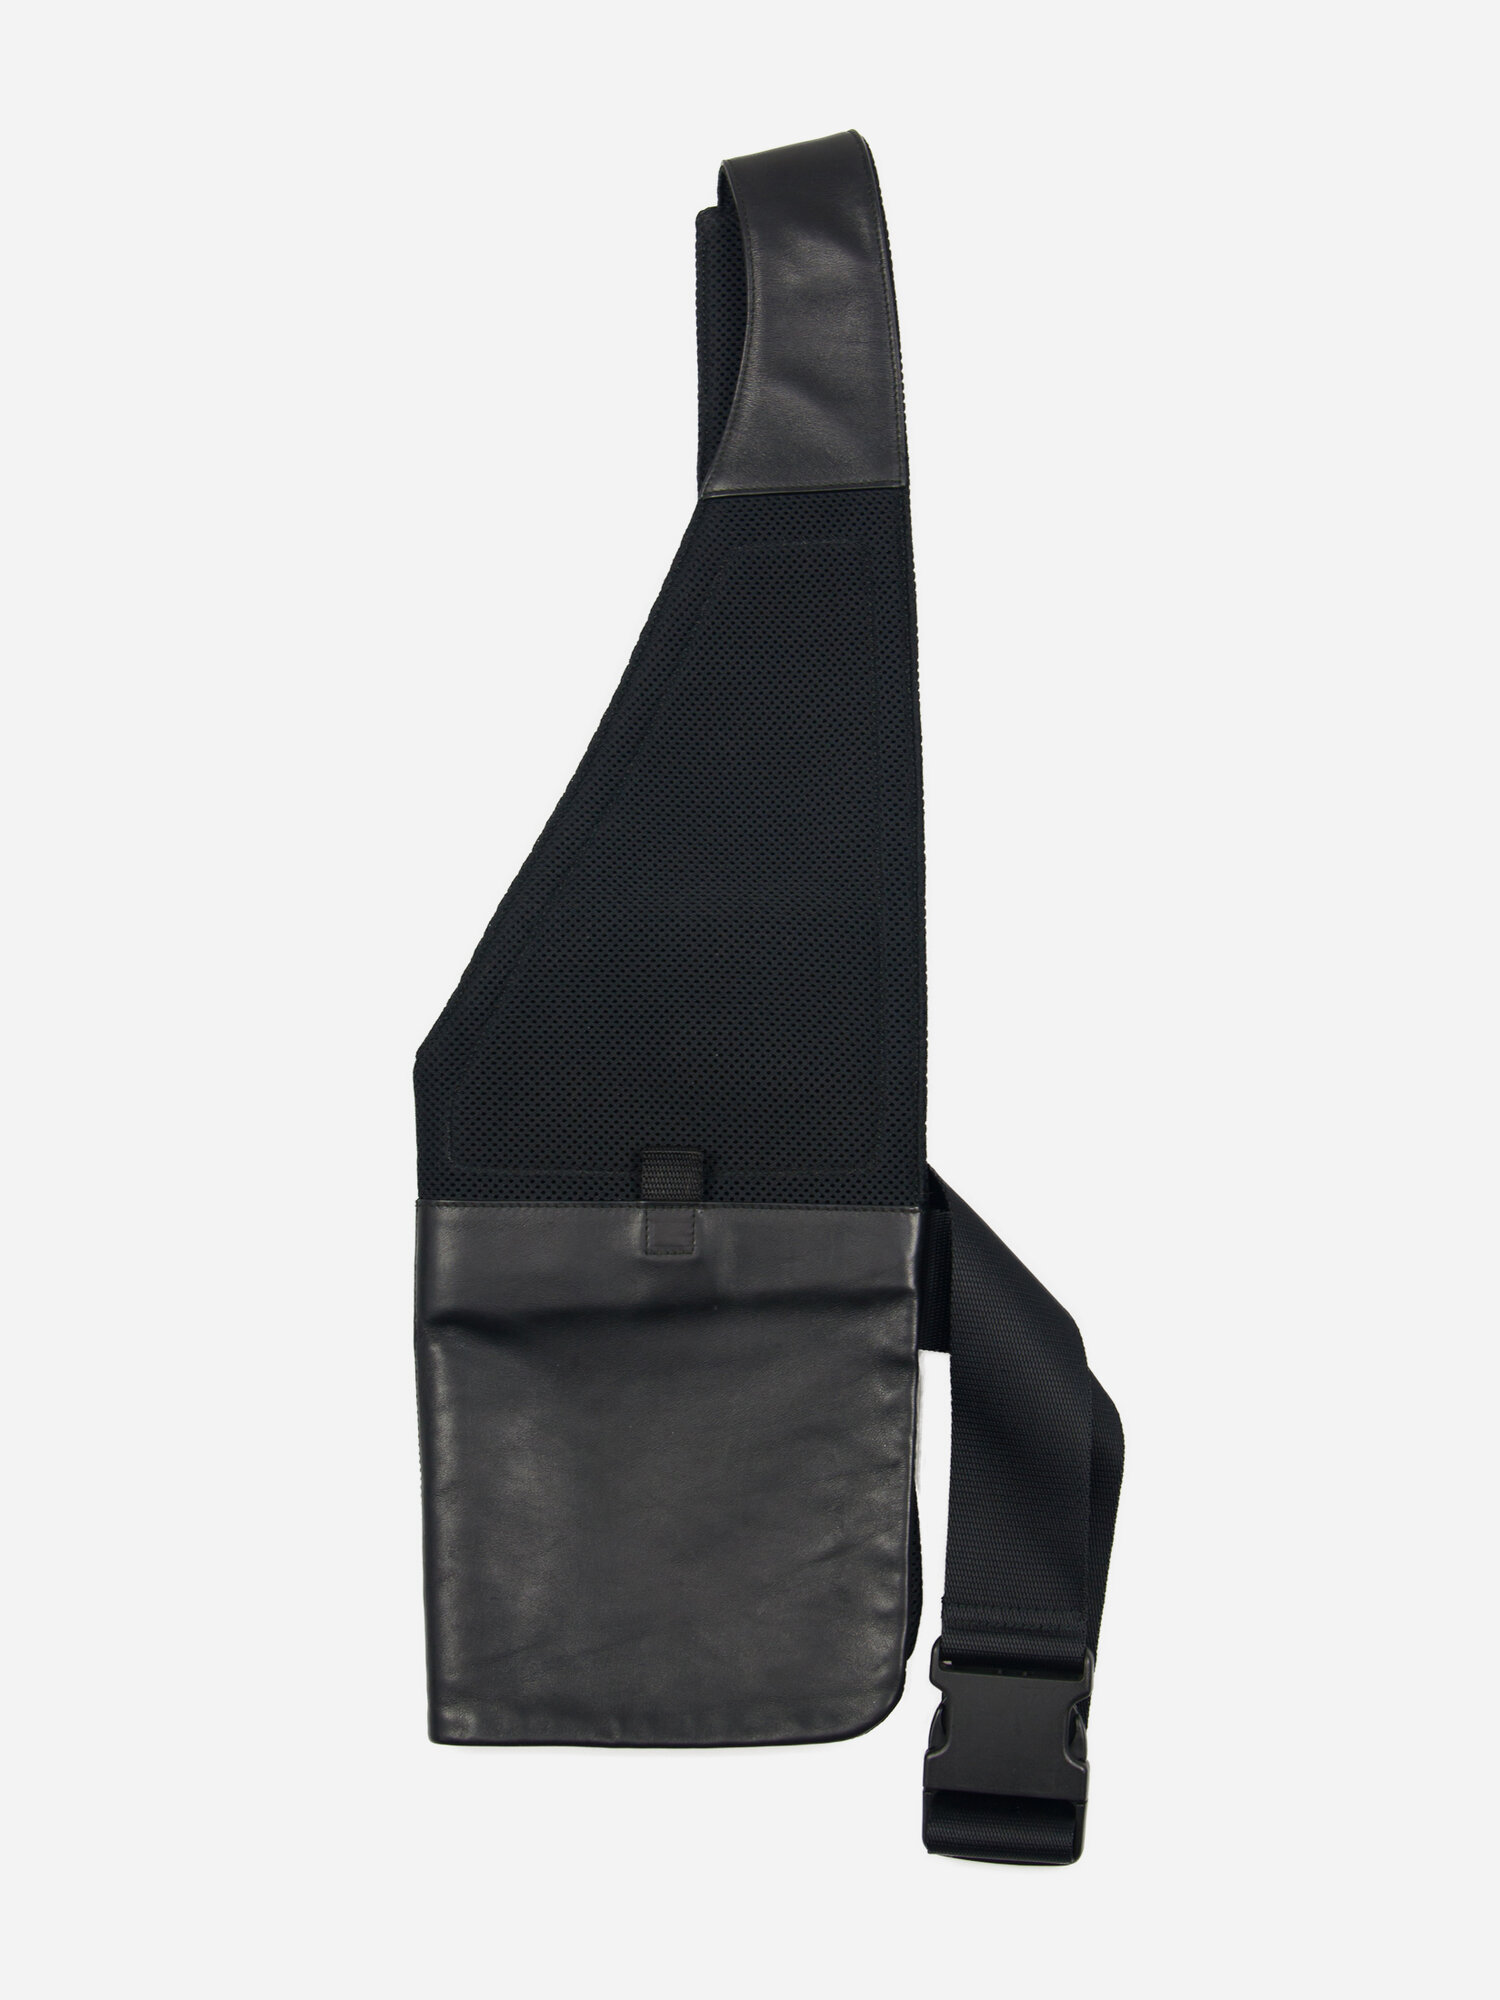 MIU MIU S/S99 Black Harness - ARCHIVED